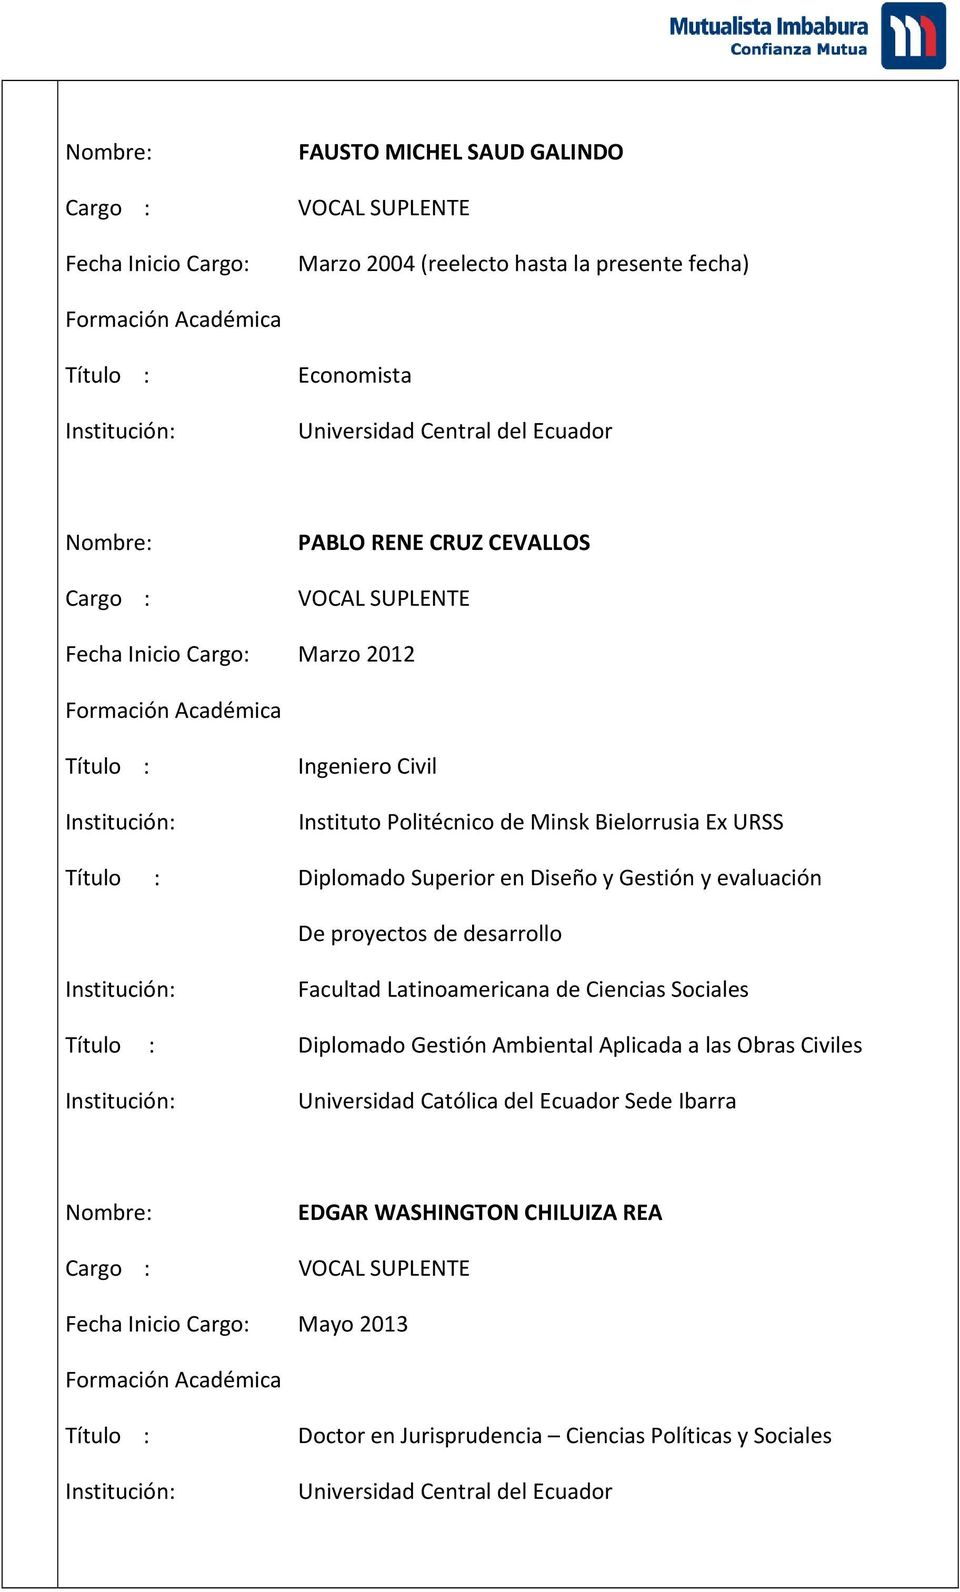 evaluación De proyectos de desarrollo Facultad Latinoamericana de Ciencias Sociales Título : Diplomado Gestión Ambiental Aplicada a las Obras Civiles Universidad Católica del Ecuador